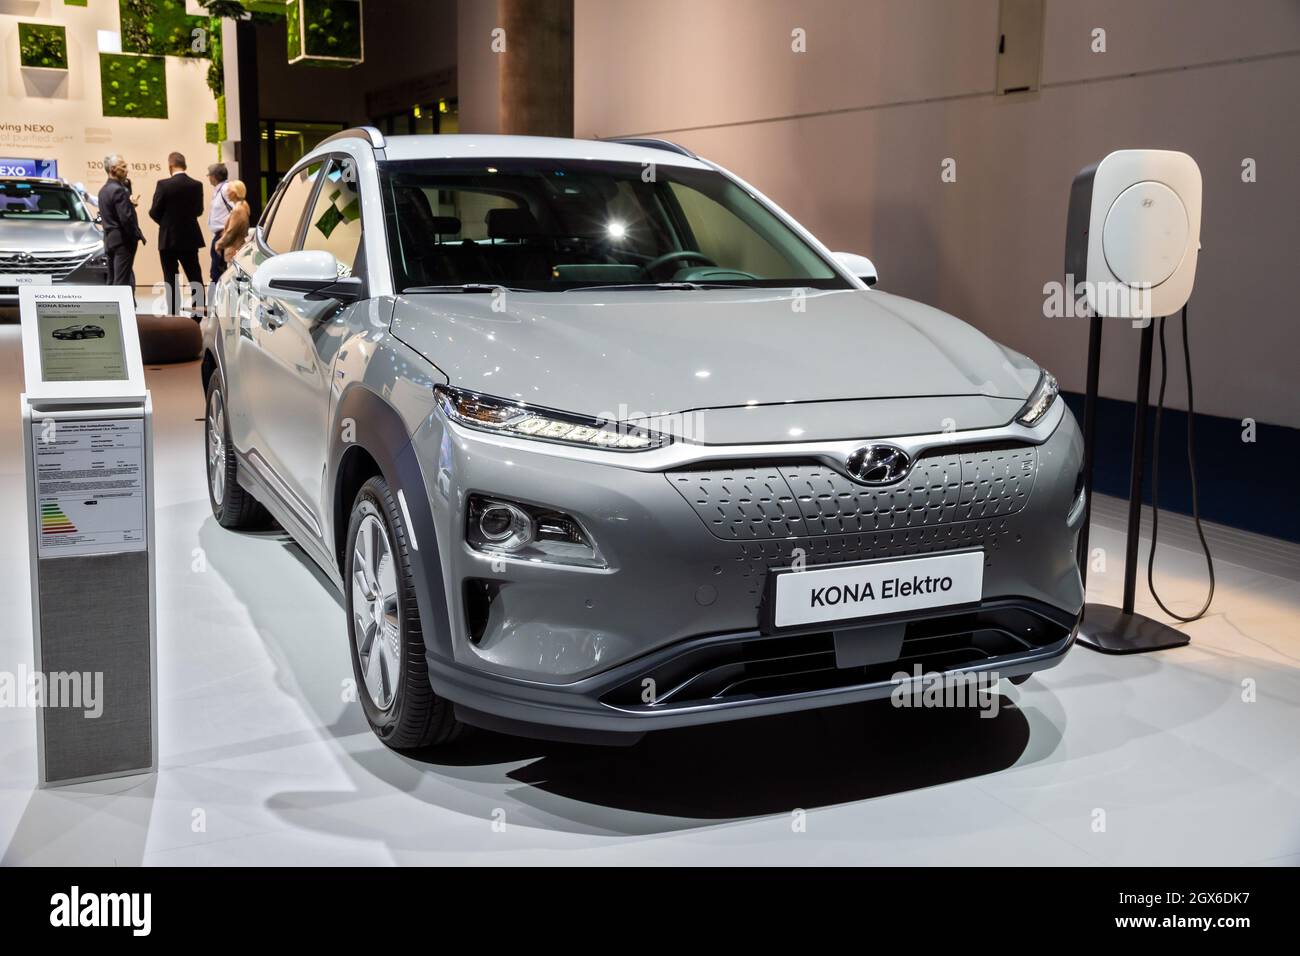 Hyundai KONA electric car showcased at the Frankfurt IAA Motor Show. Germany - September 11, 2019 Stock Photo